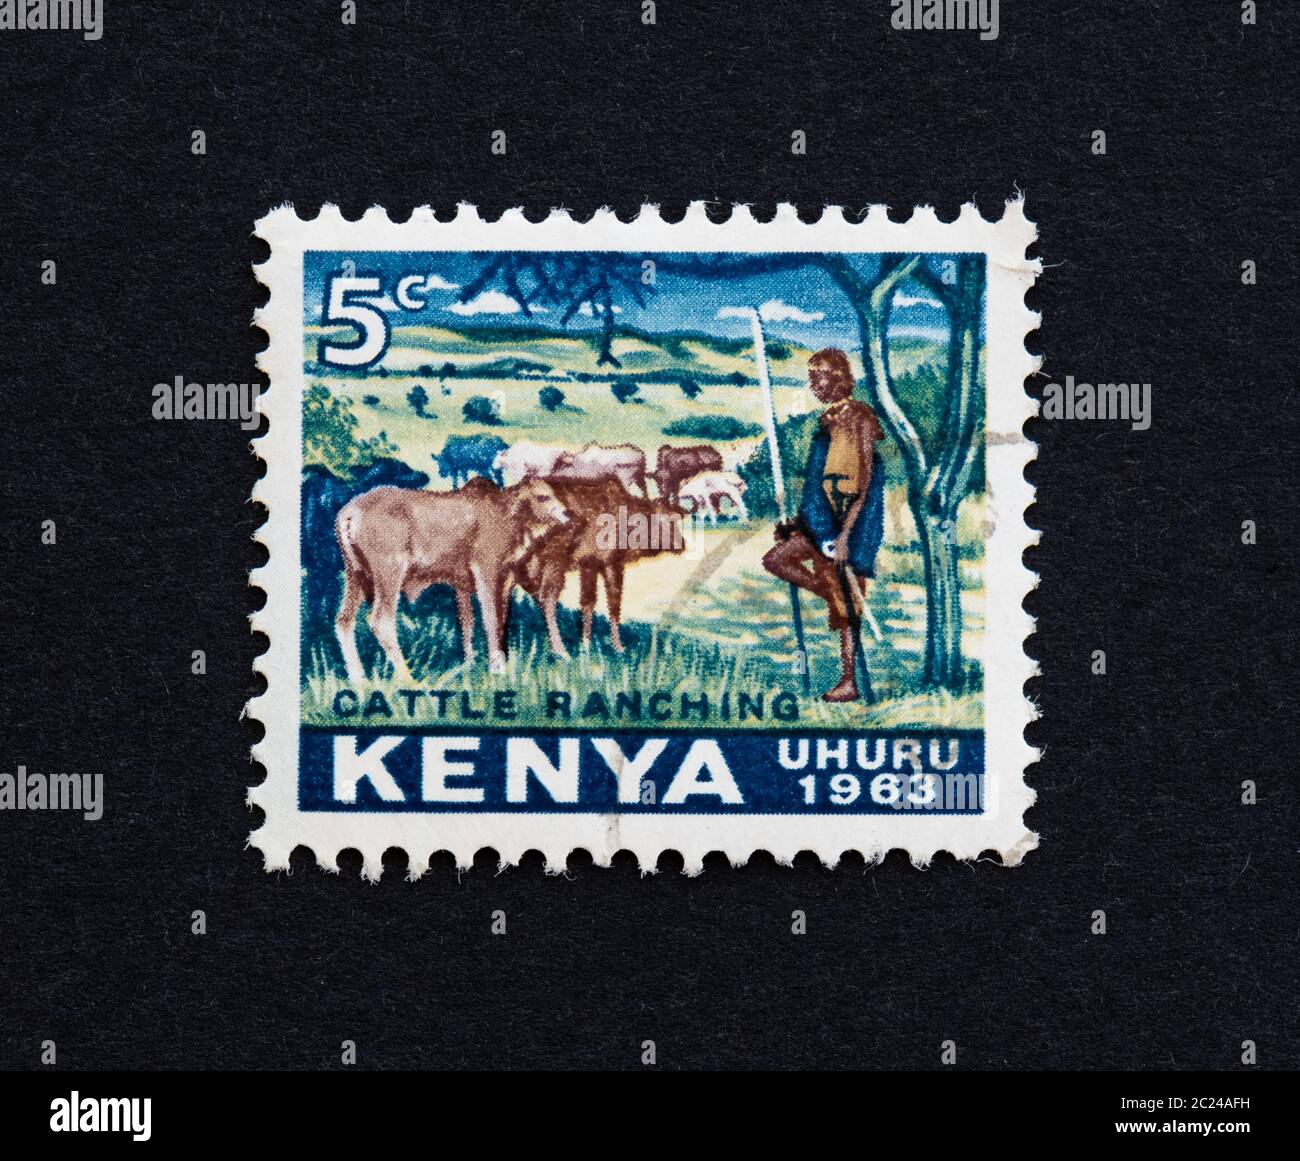 Kenya independence stamp (uhuru) showing cattle ranching 1963 Stock Photo